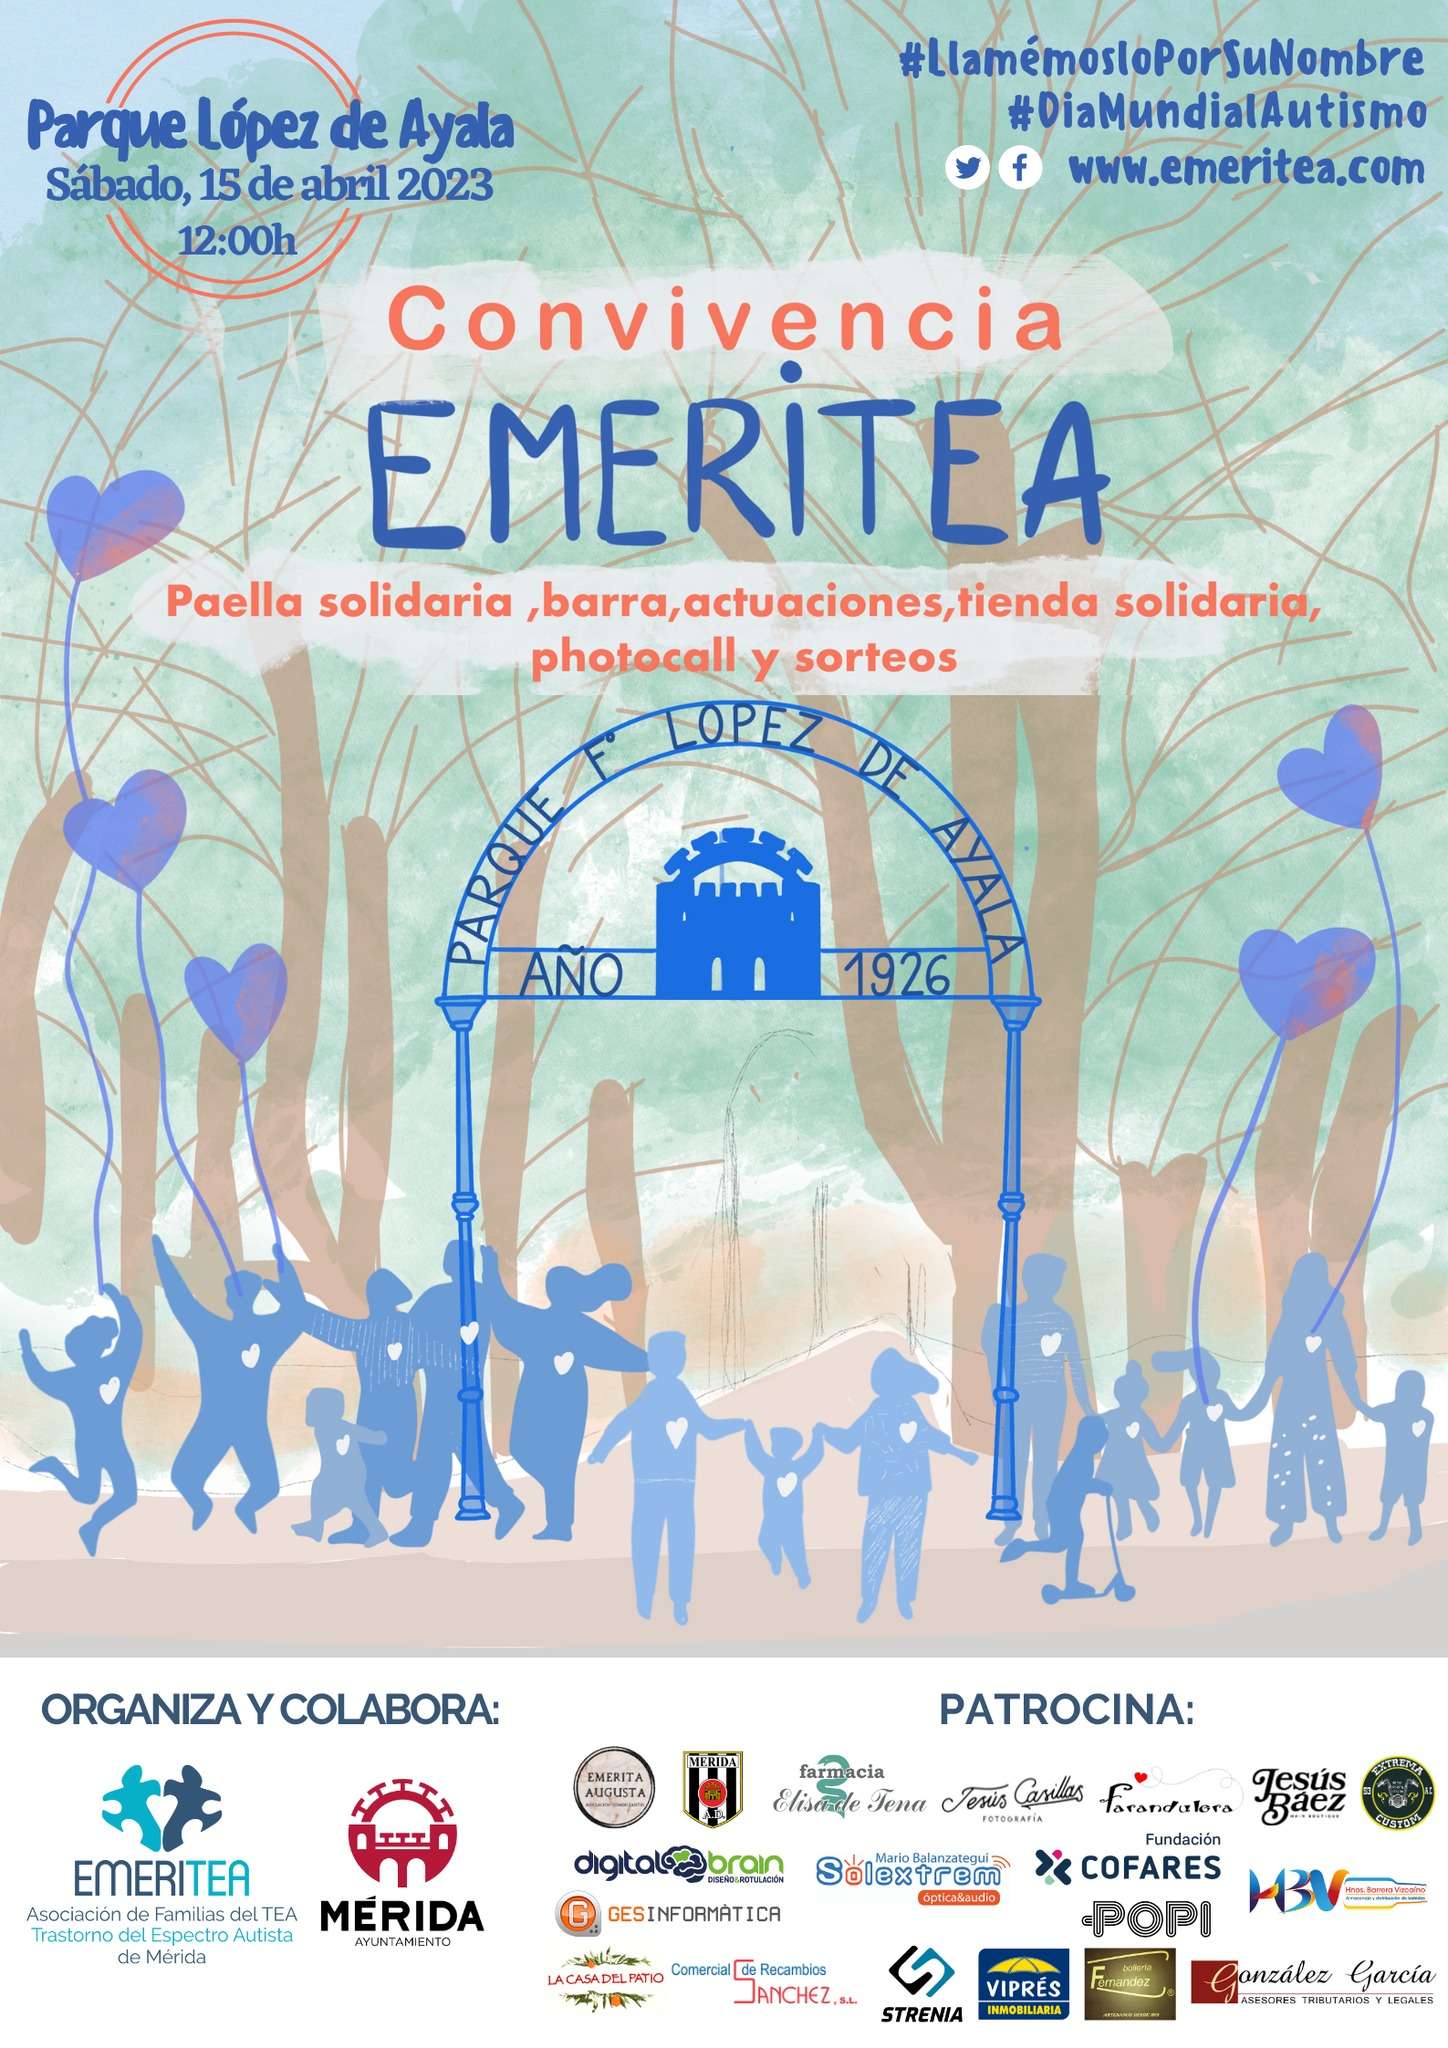 Emeritea celebra su V Convivencia por el Día mundial del autismo en Mérida